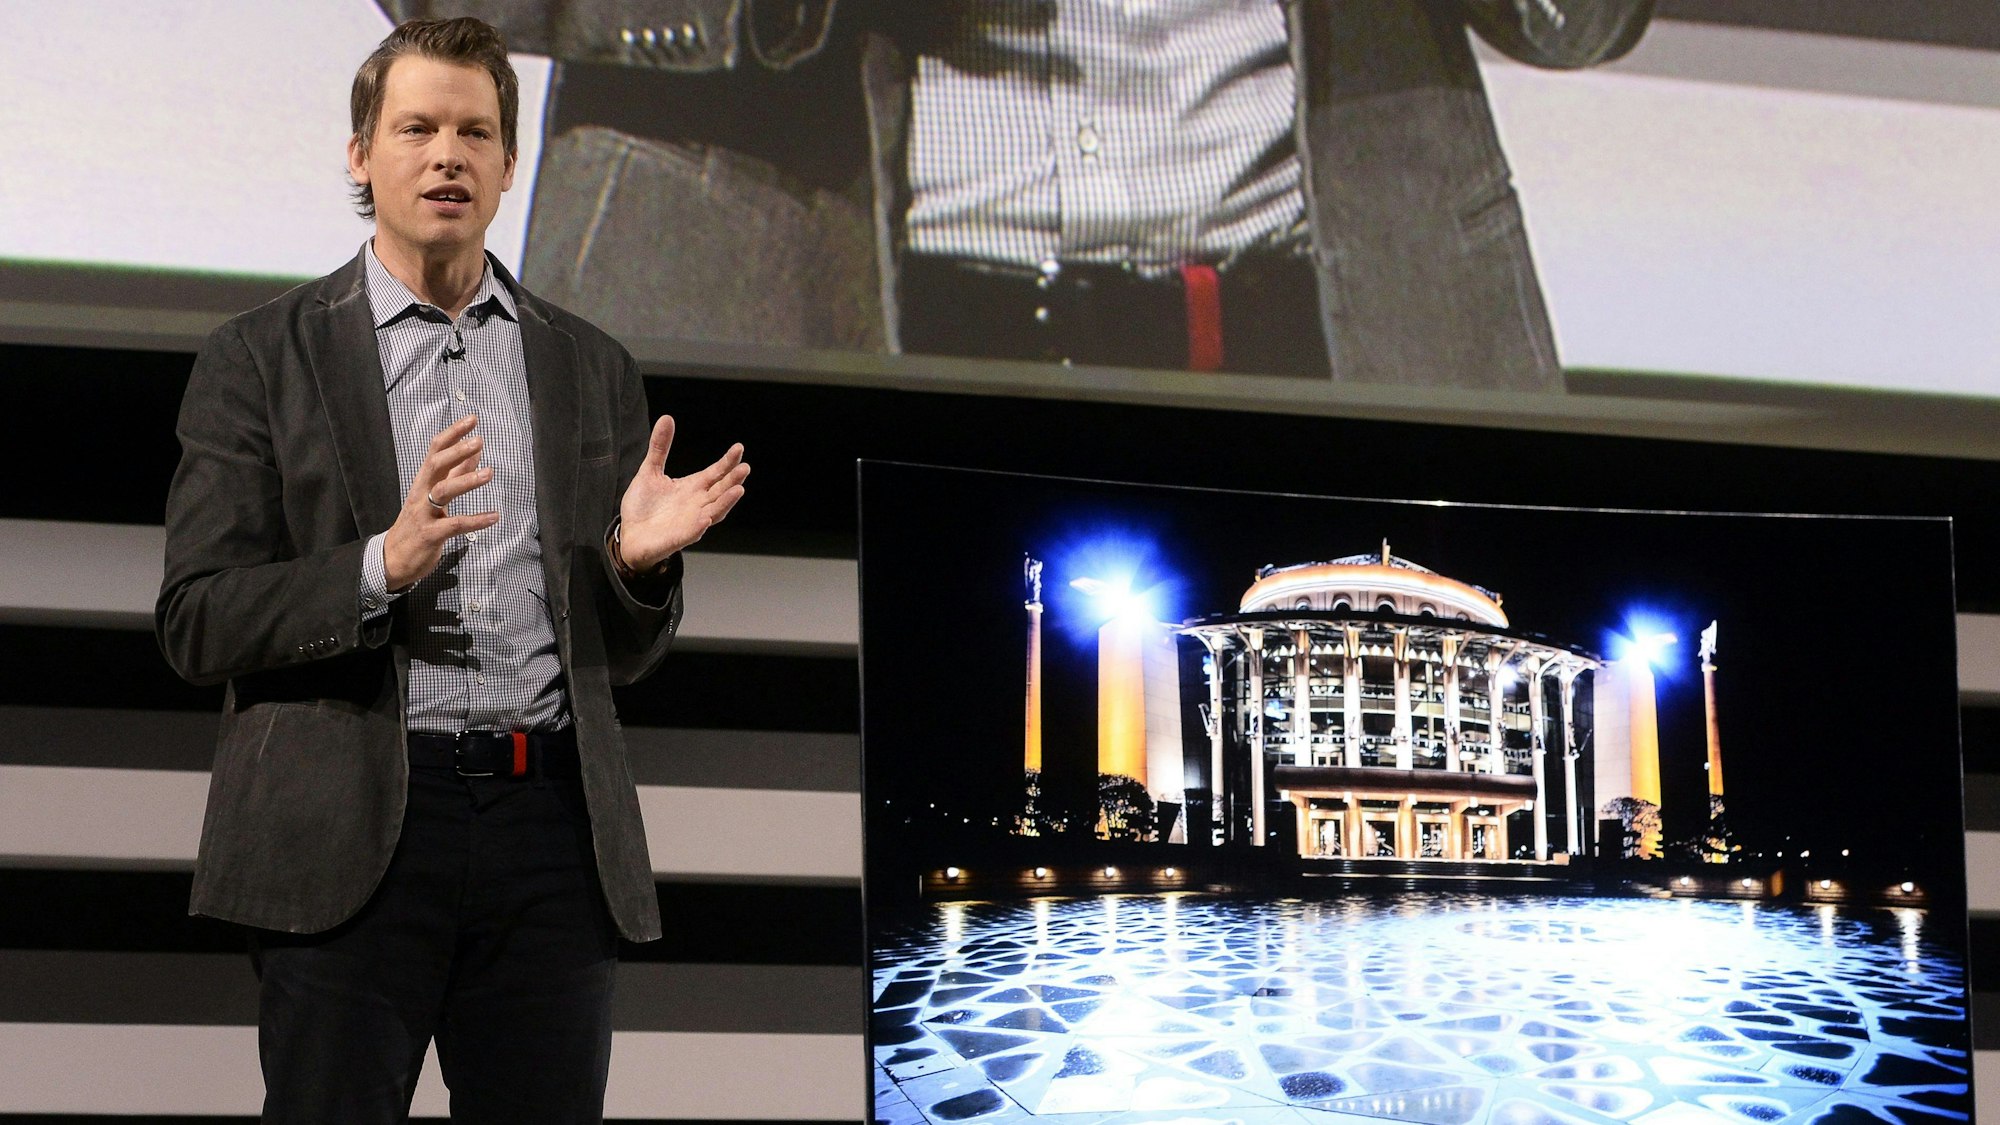 Greg Peters, Produktleiter Netflix, spricht über die Partnerschaft zwischen Netflix und LG während der Technikmesse CES.